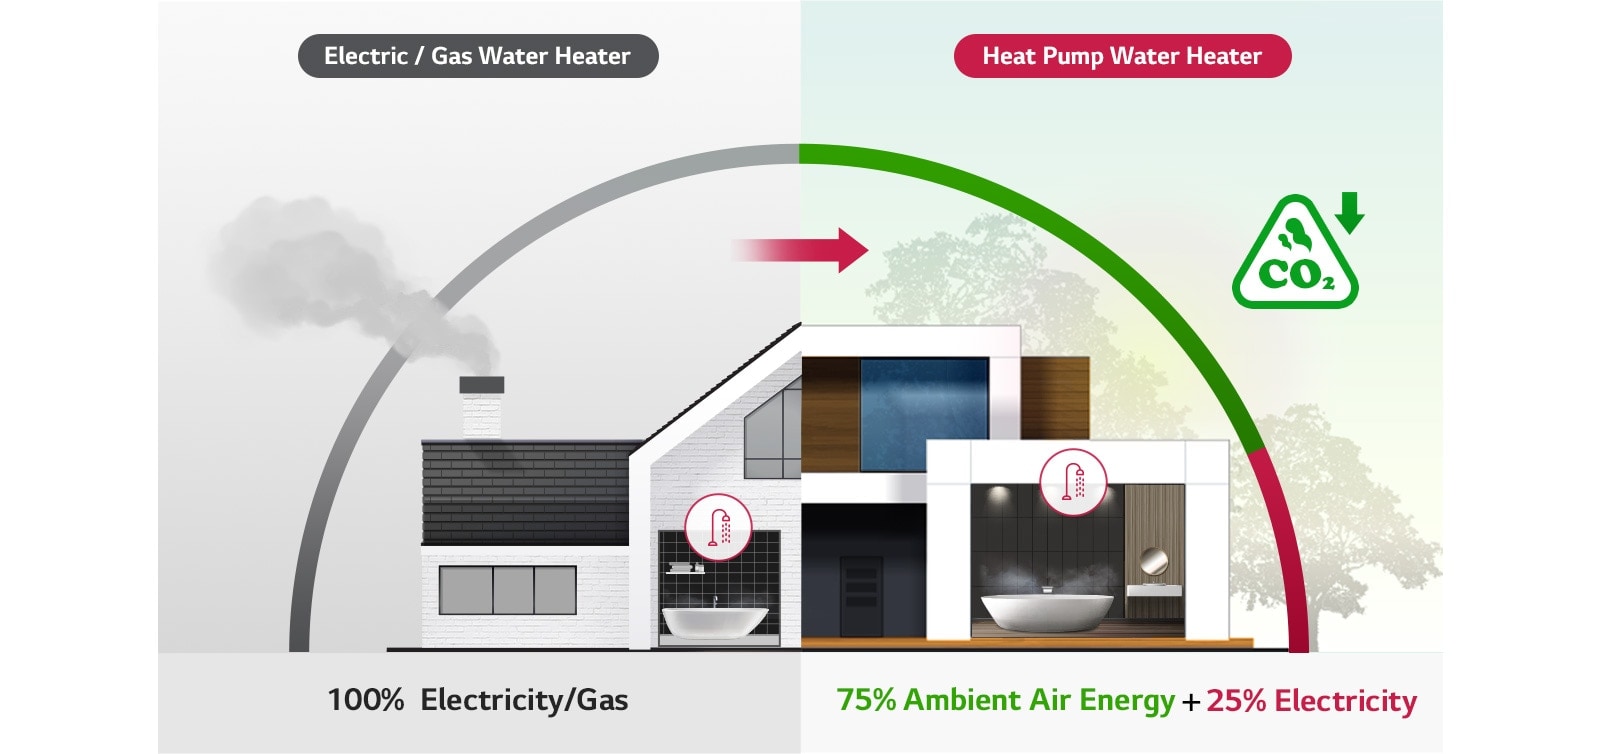 Co je to ohřívač vody s tepelným čerpadlem?